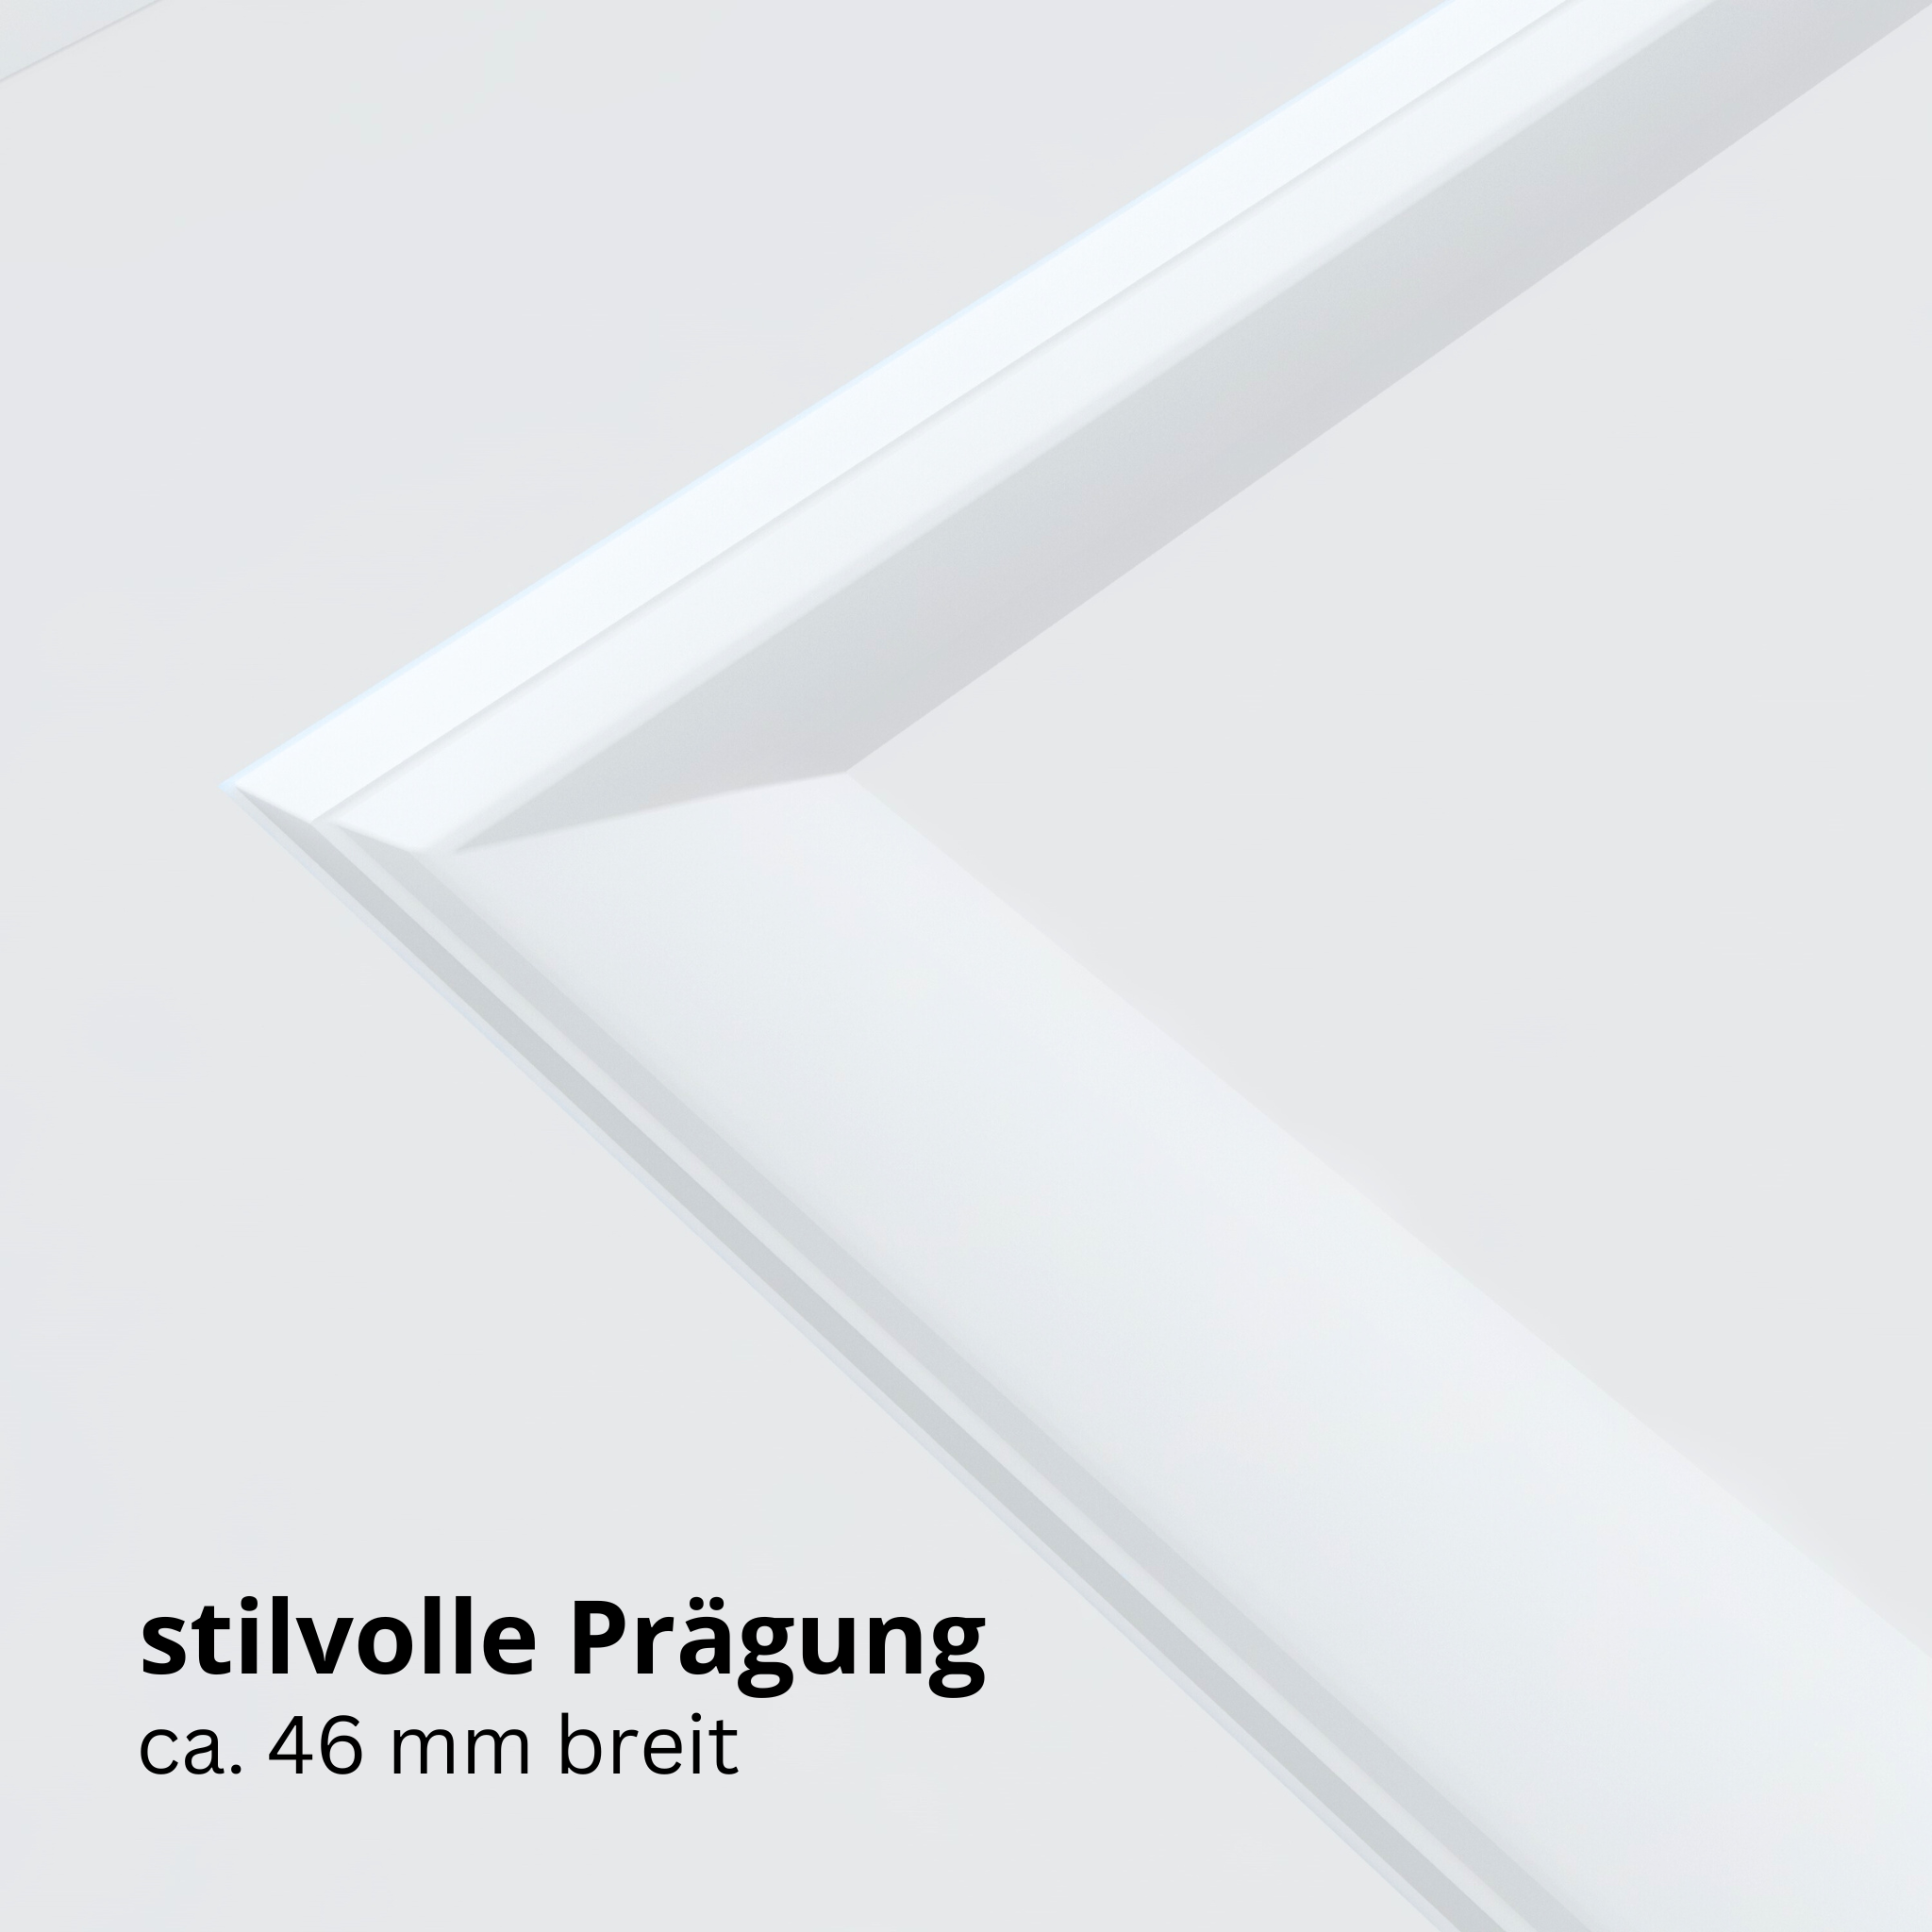 Wohnungseingangstür brillant-weiß 2 Kassetten Designkante SK2 / KK3 - Modell Stiltür K23